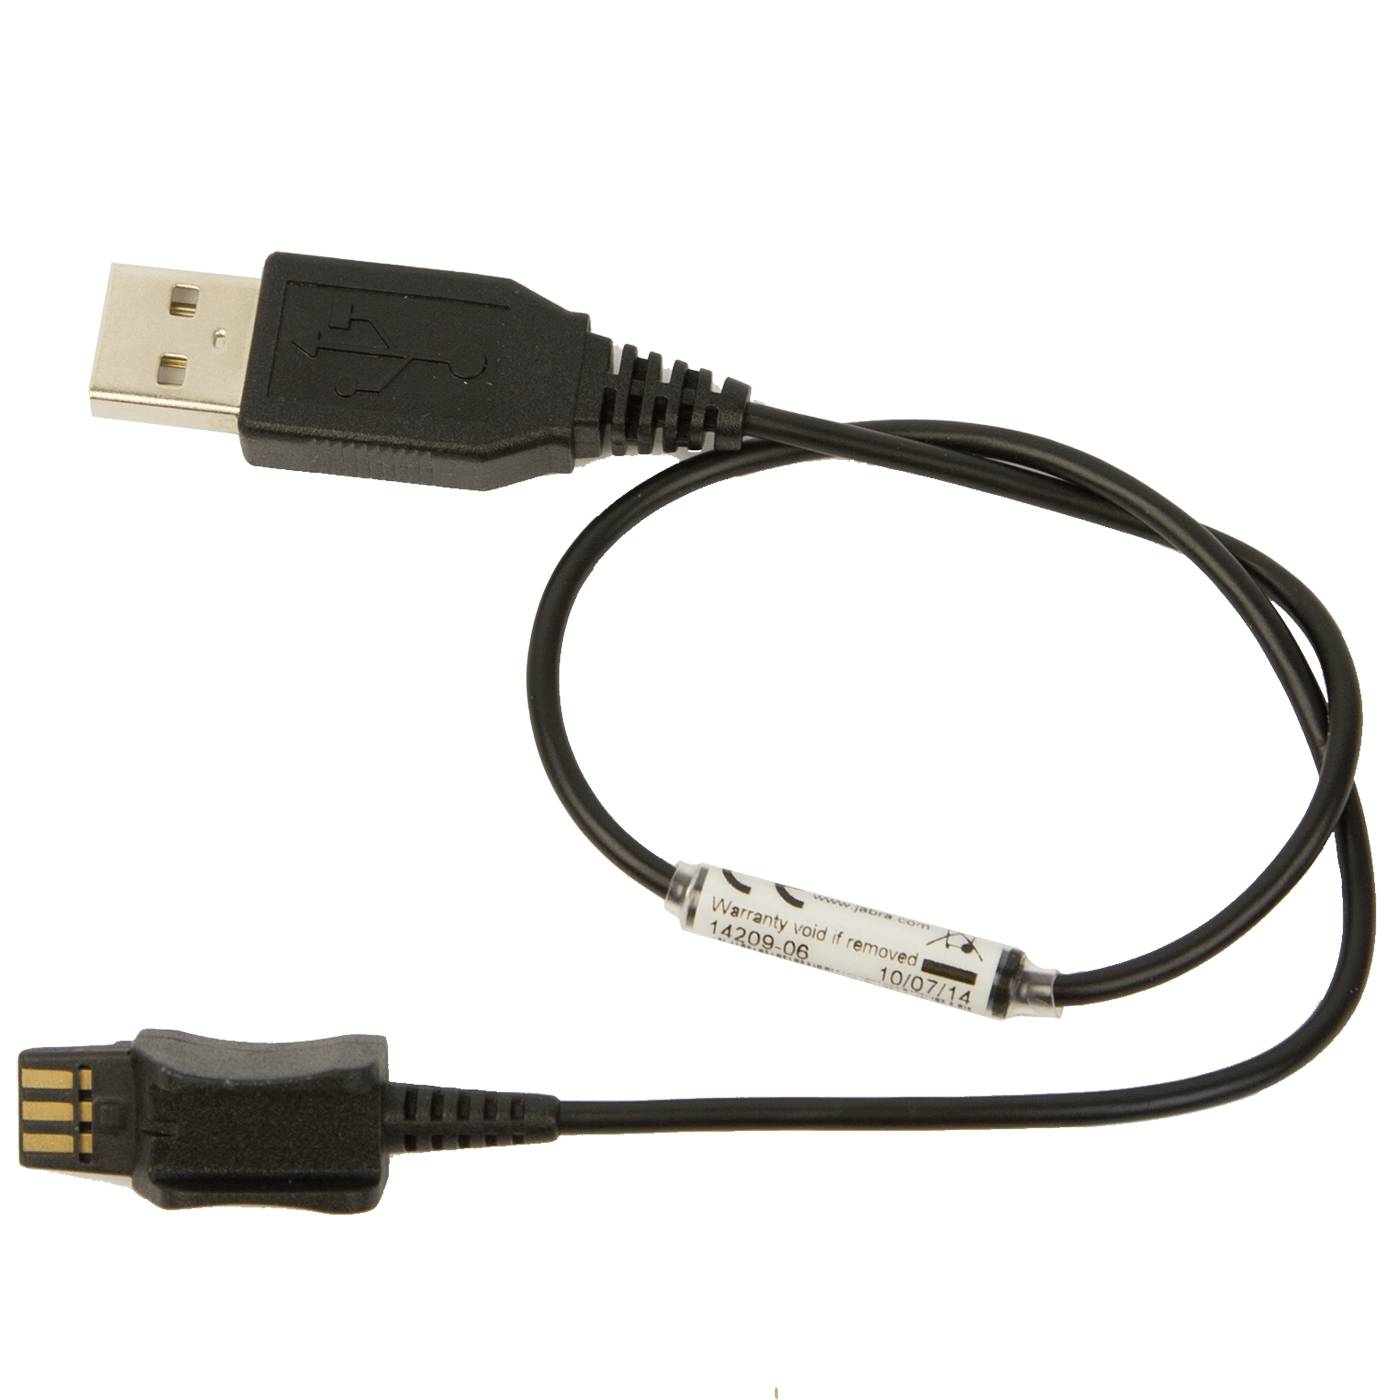 Rca Informatique - Image du produit : USB CHARGE CABLE FOR JABRA PRO 925 AND 935